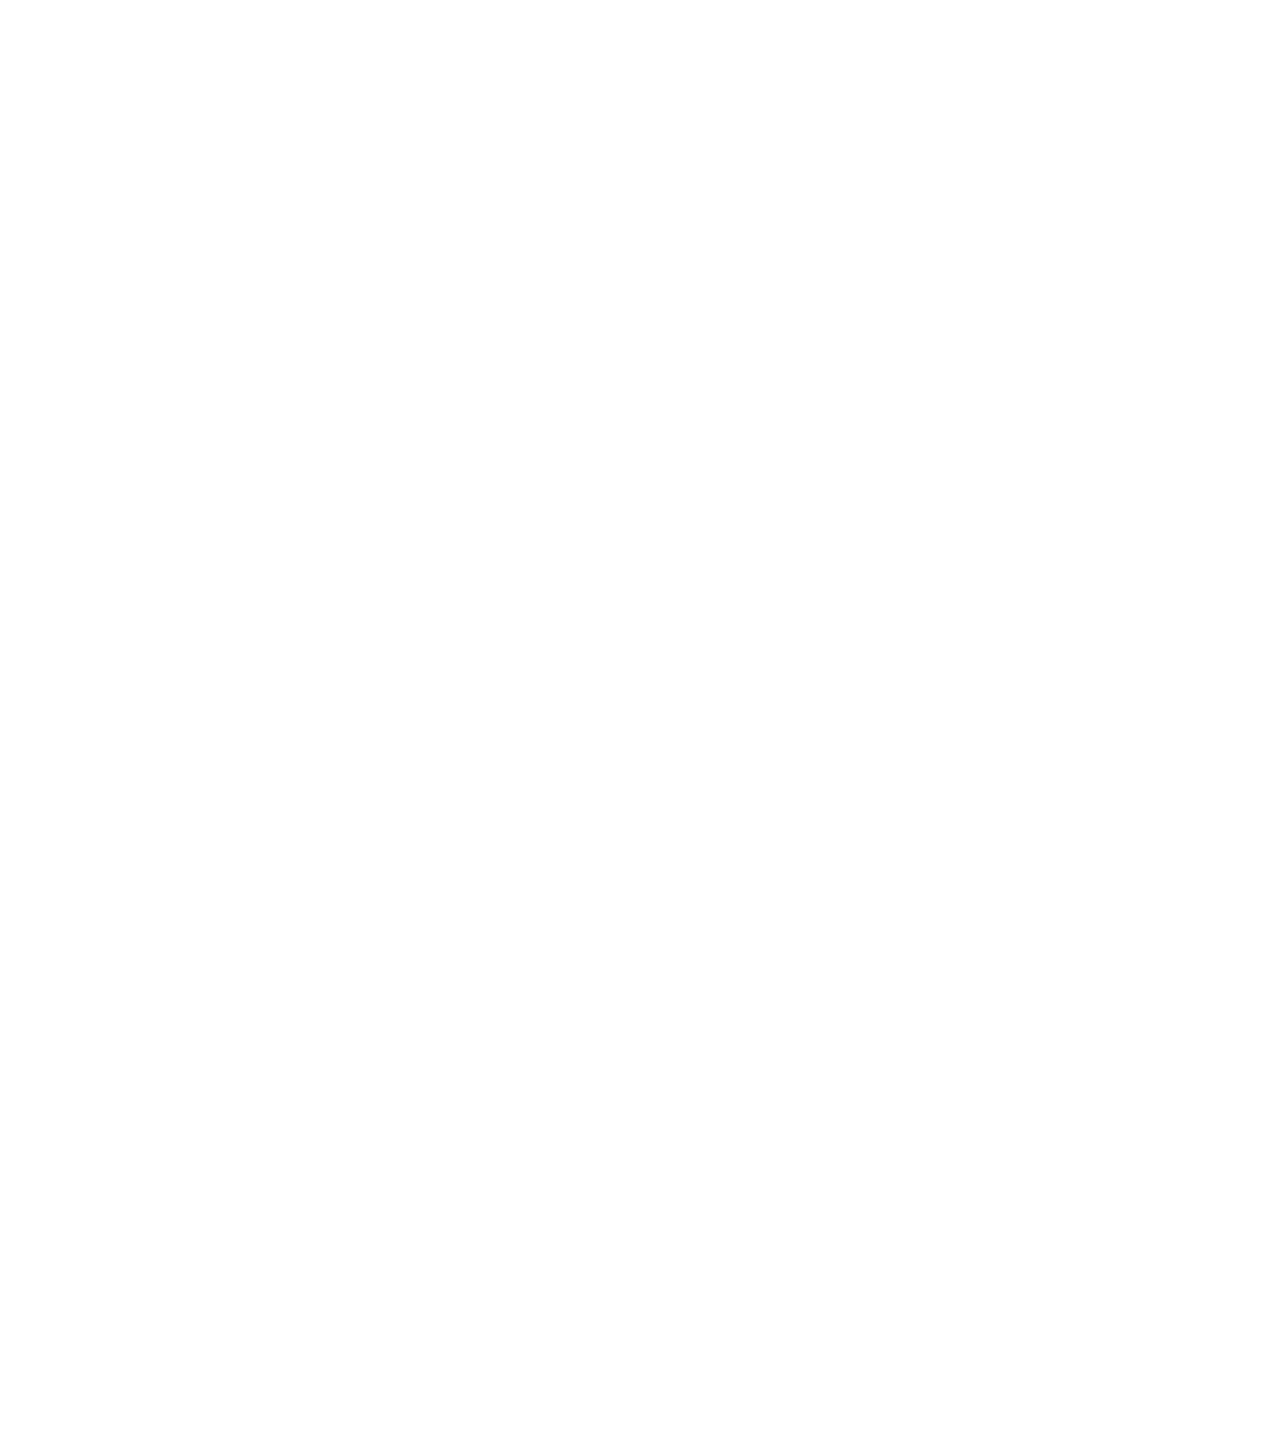 We think sustainably